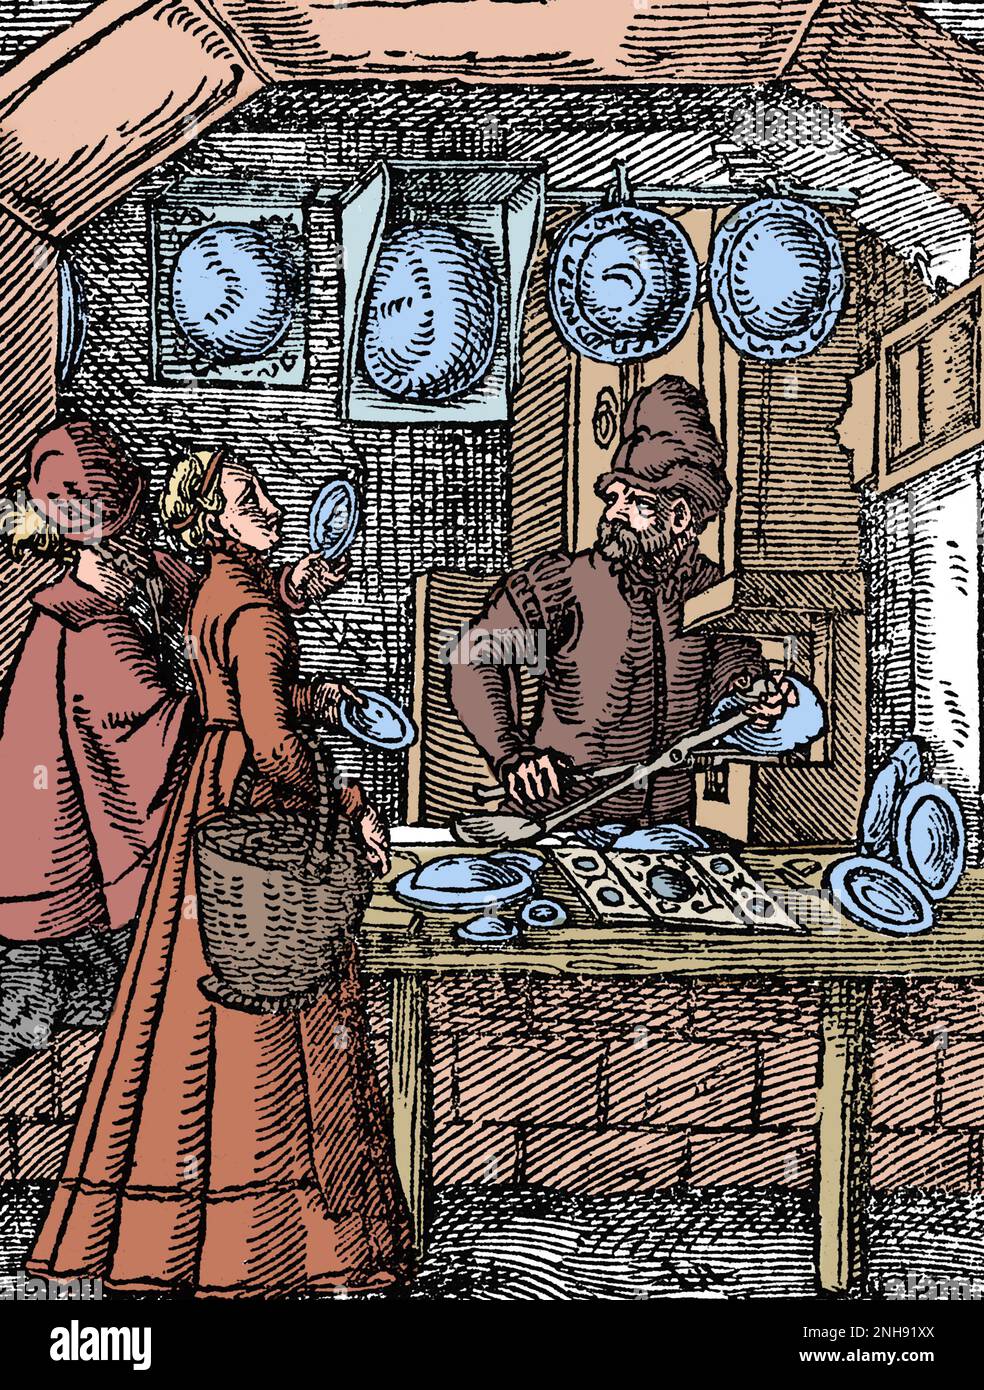 Ein Spiegelmacher in seiner Werkstatt, mit konvexen Spiegeln und zwei Kunden, die Handspiegel ausprobieren. Woodcut aus Jost Ammans Handelsbuch, 1568. Gefärbt. Stockfoto